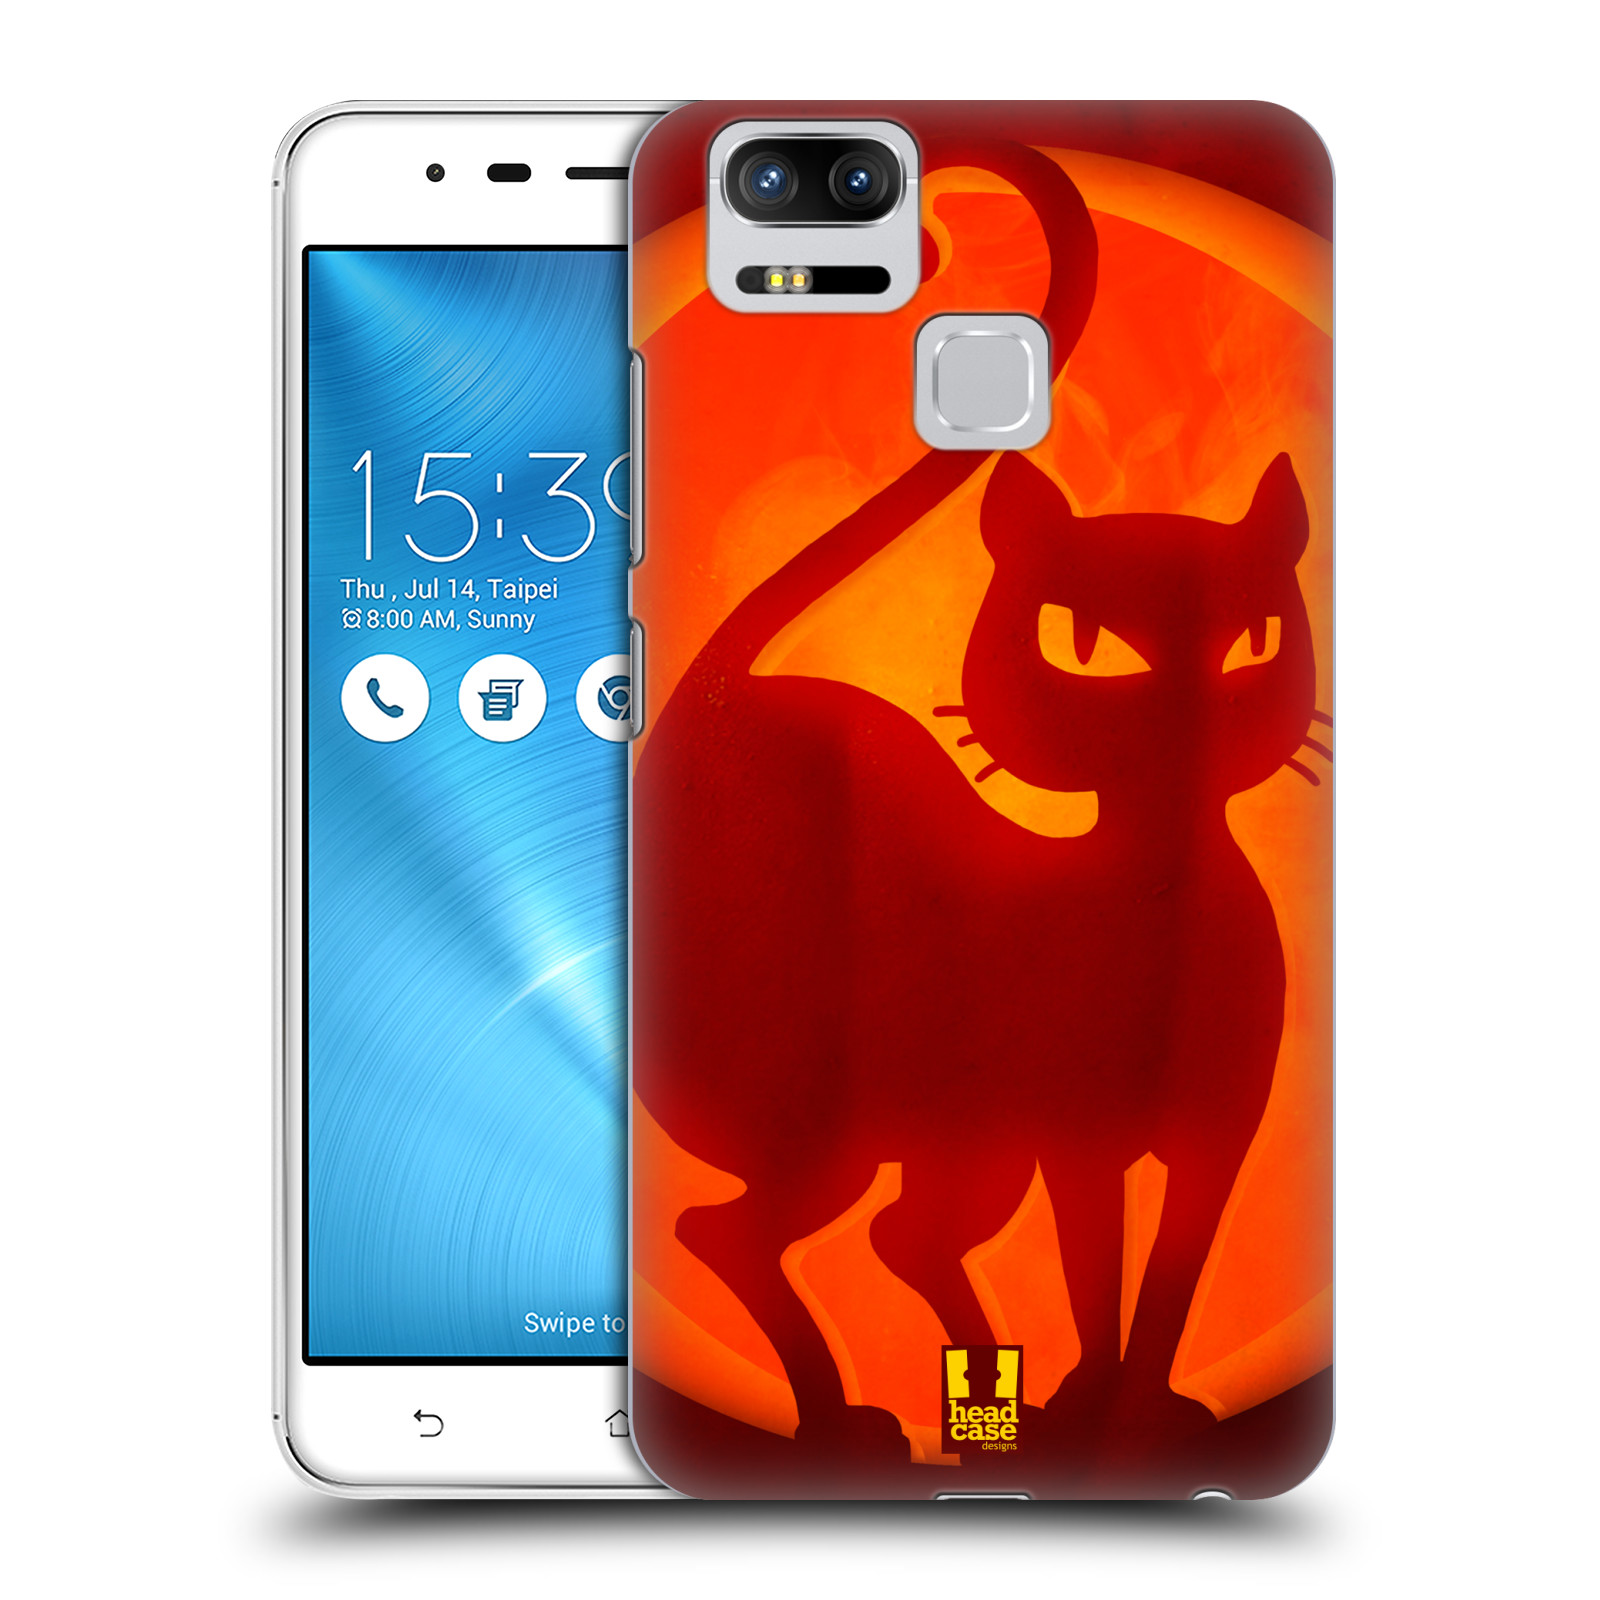 HEAD CASE plastový obal na mobil Asus Zenfone 3 Zoom ZE553KL vzor odraz svítilny oranžová KOČKA